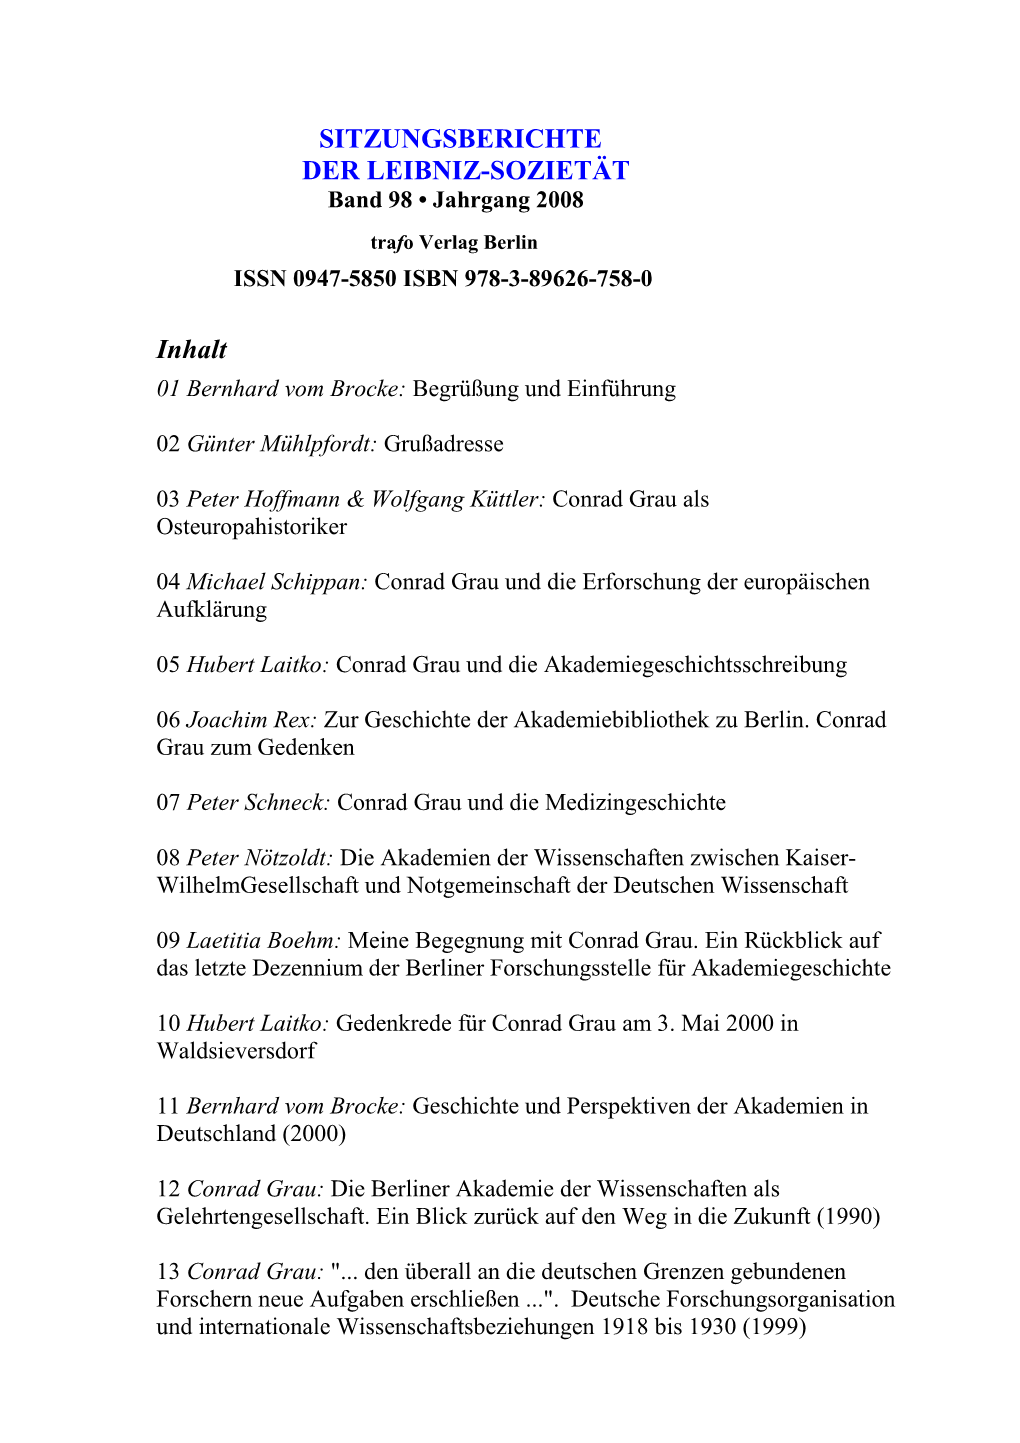 Sitzungsberichte Der Leibniz-Sozietät, Jahrgang 2008, Band 98